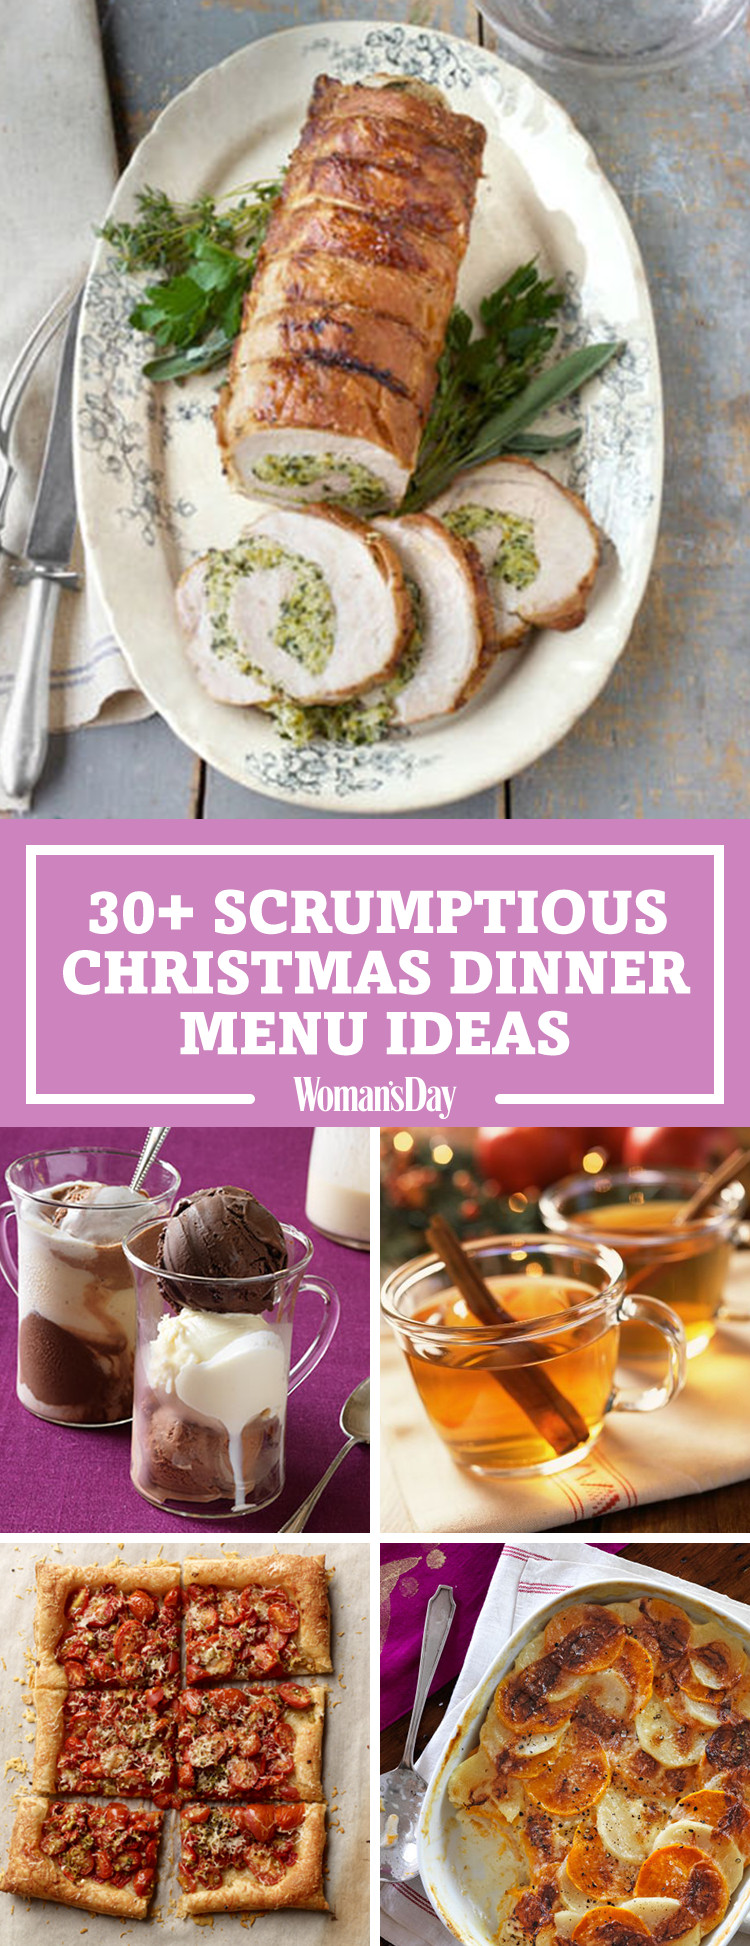 Christmas Dinners Ideas
 Best Christmas Dinner Menu Ideas for 2017